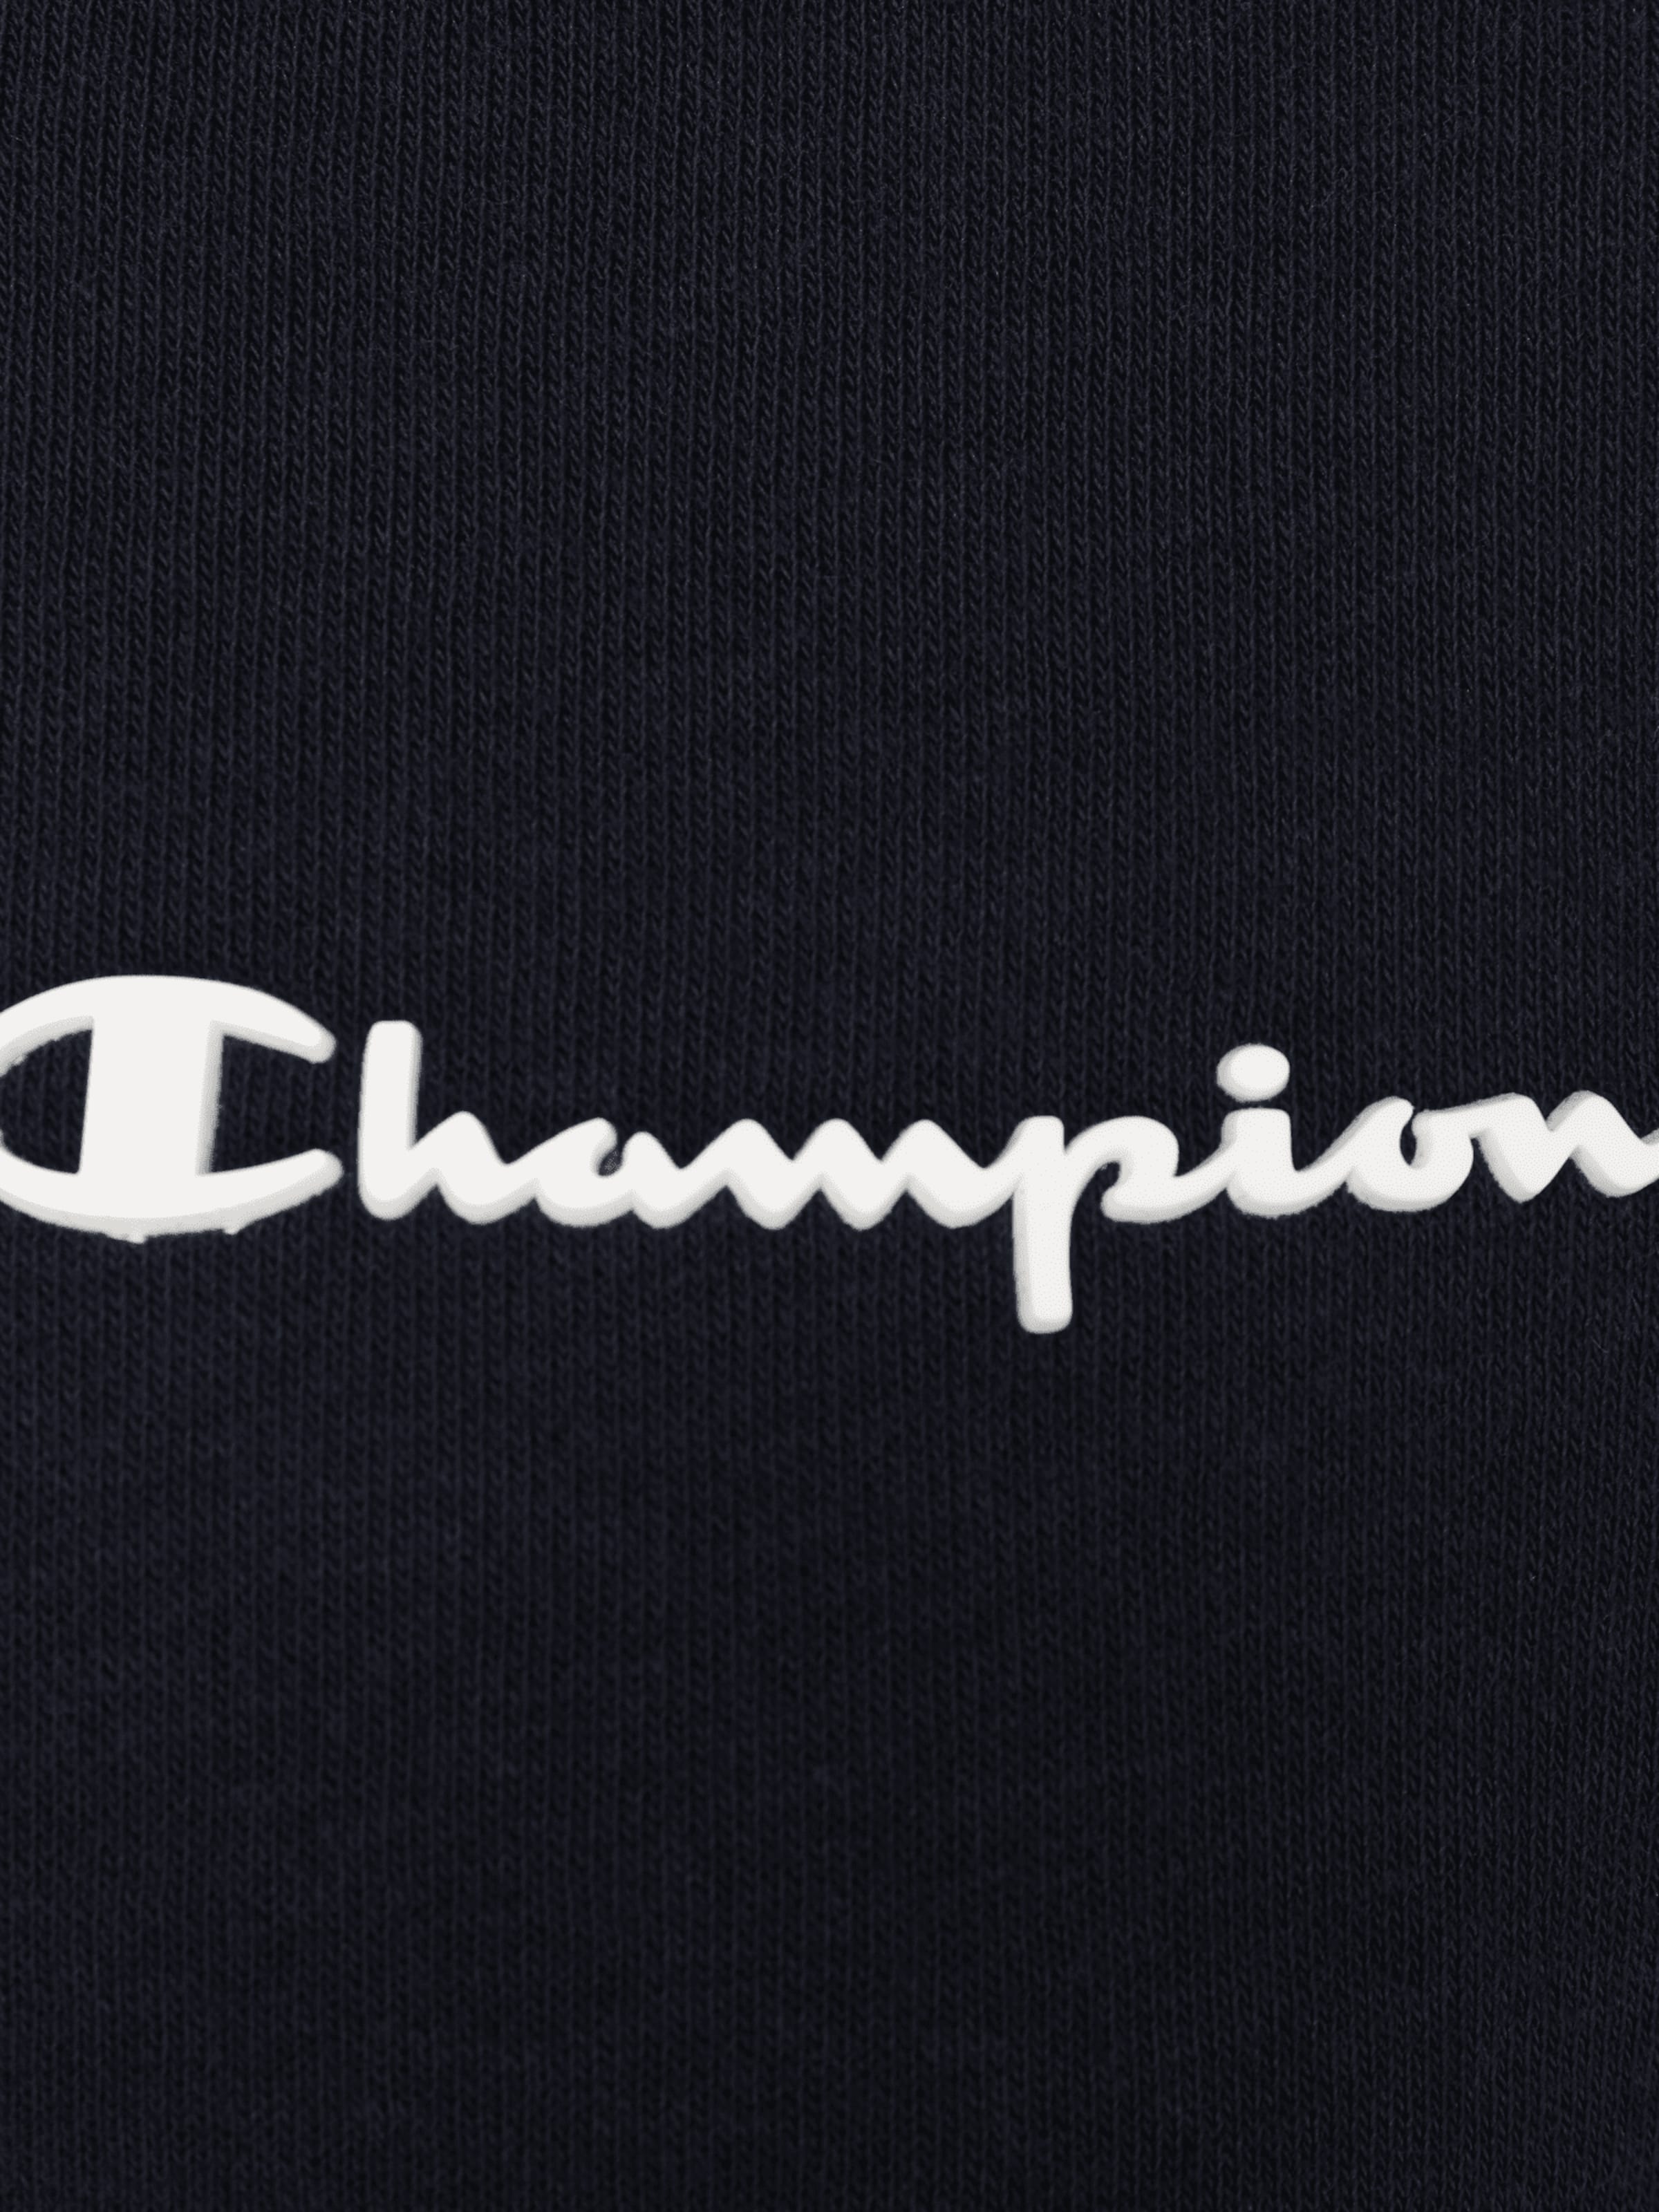 Vêtements Sweat-shirt Champion Authentic Athletic Apparel en Bleu Marine 